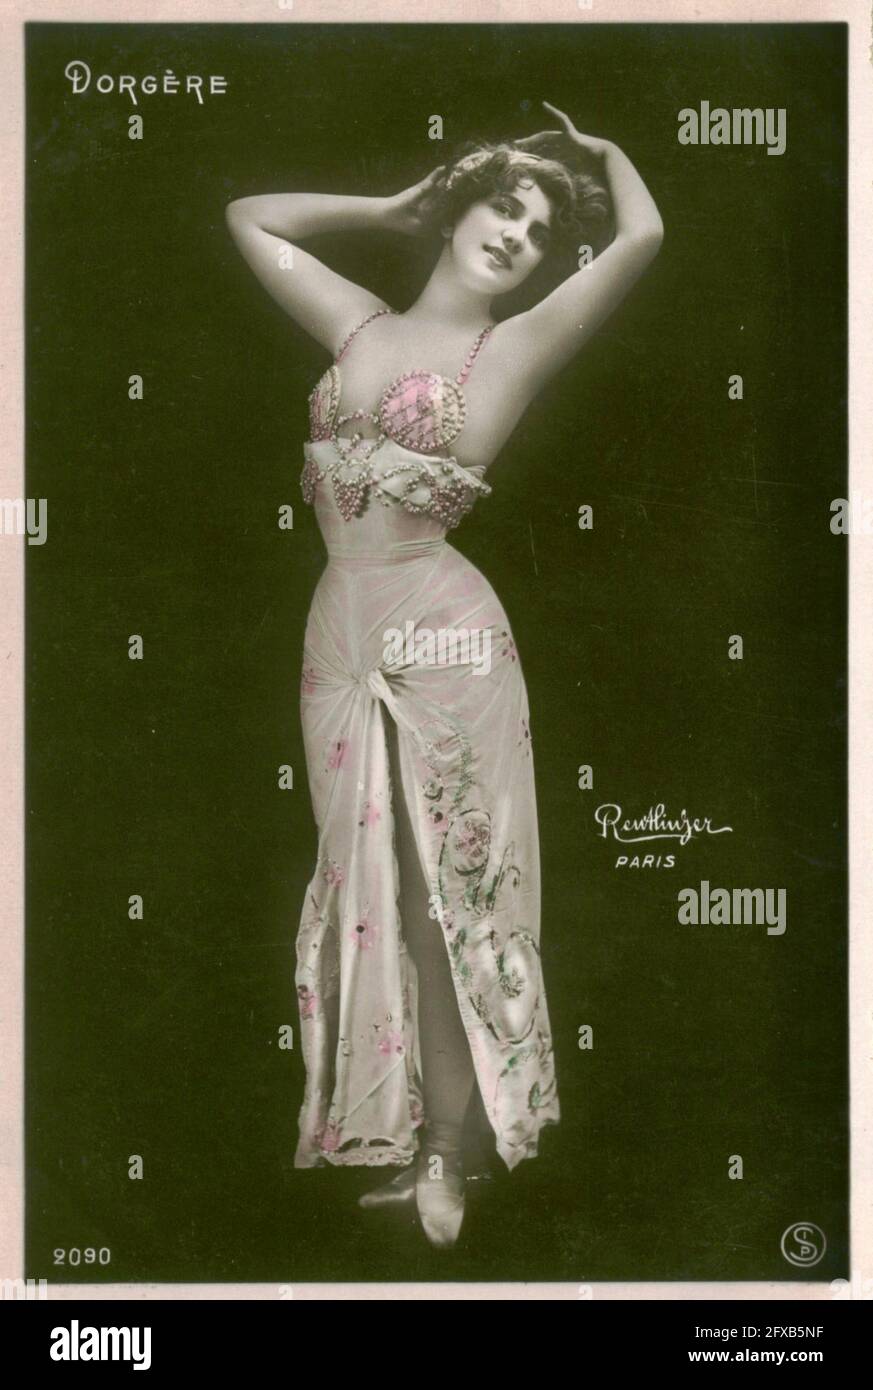 Léopold-Émile Reutlinger vintage photograph of Arlette Dorgère french actress, singer and dancer. Stock Photo